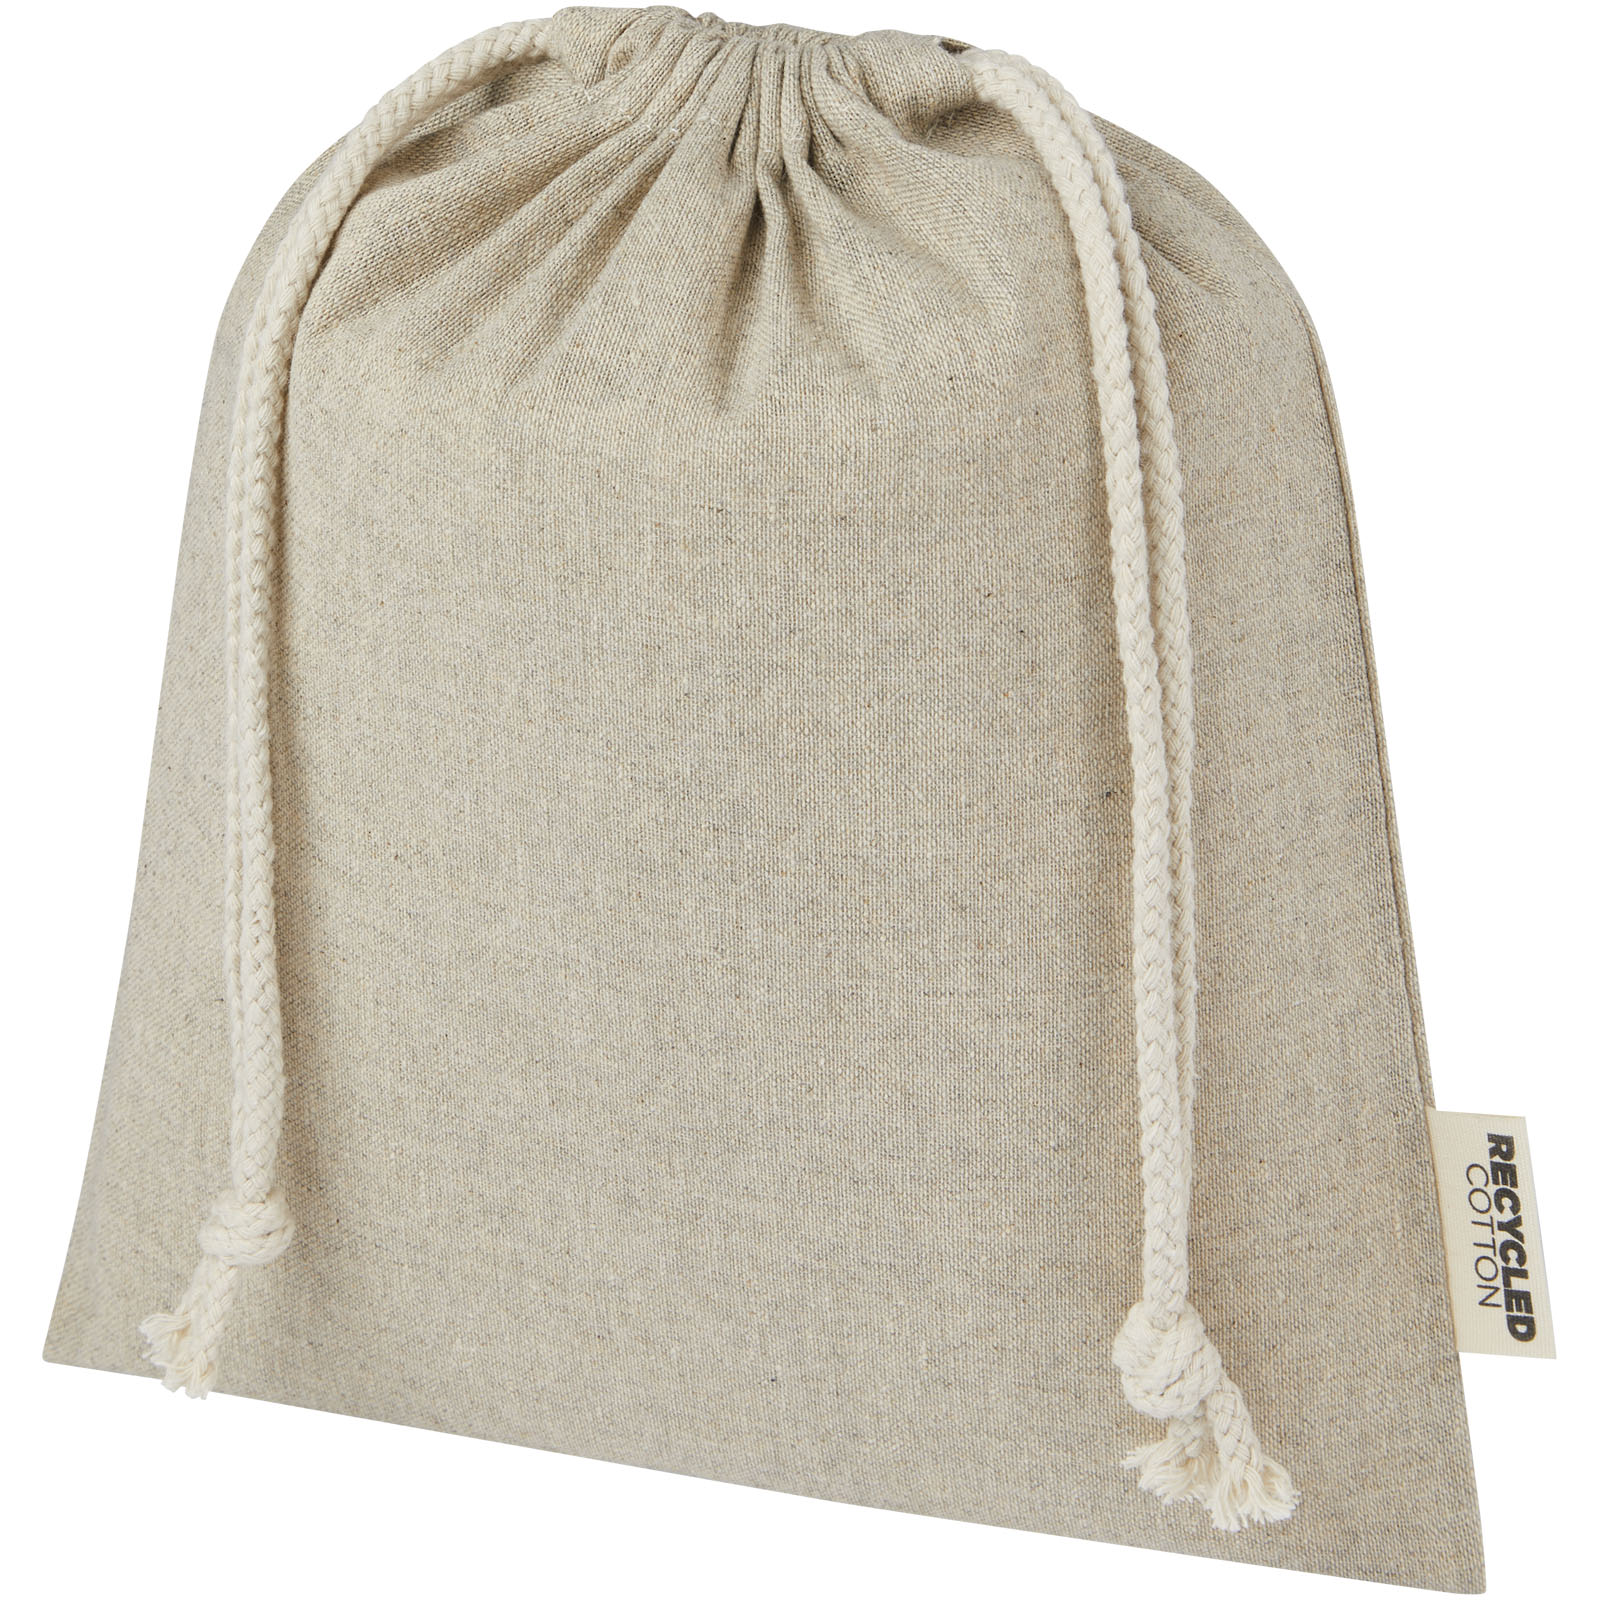 Eco-Cotton Gift Bag - Sutton Valence - Badbury